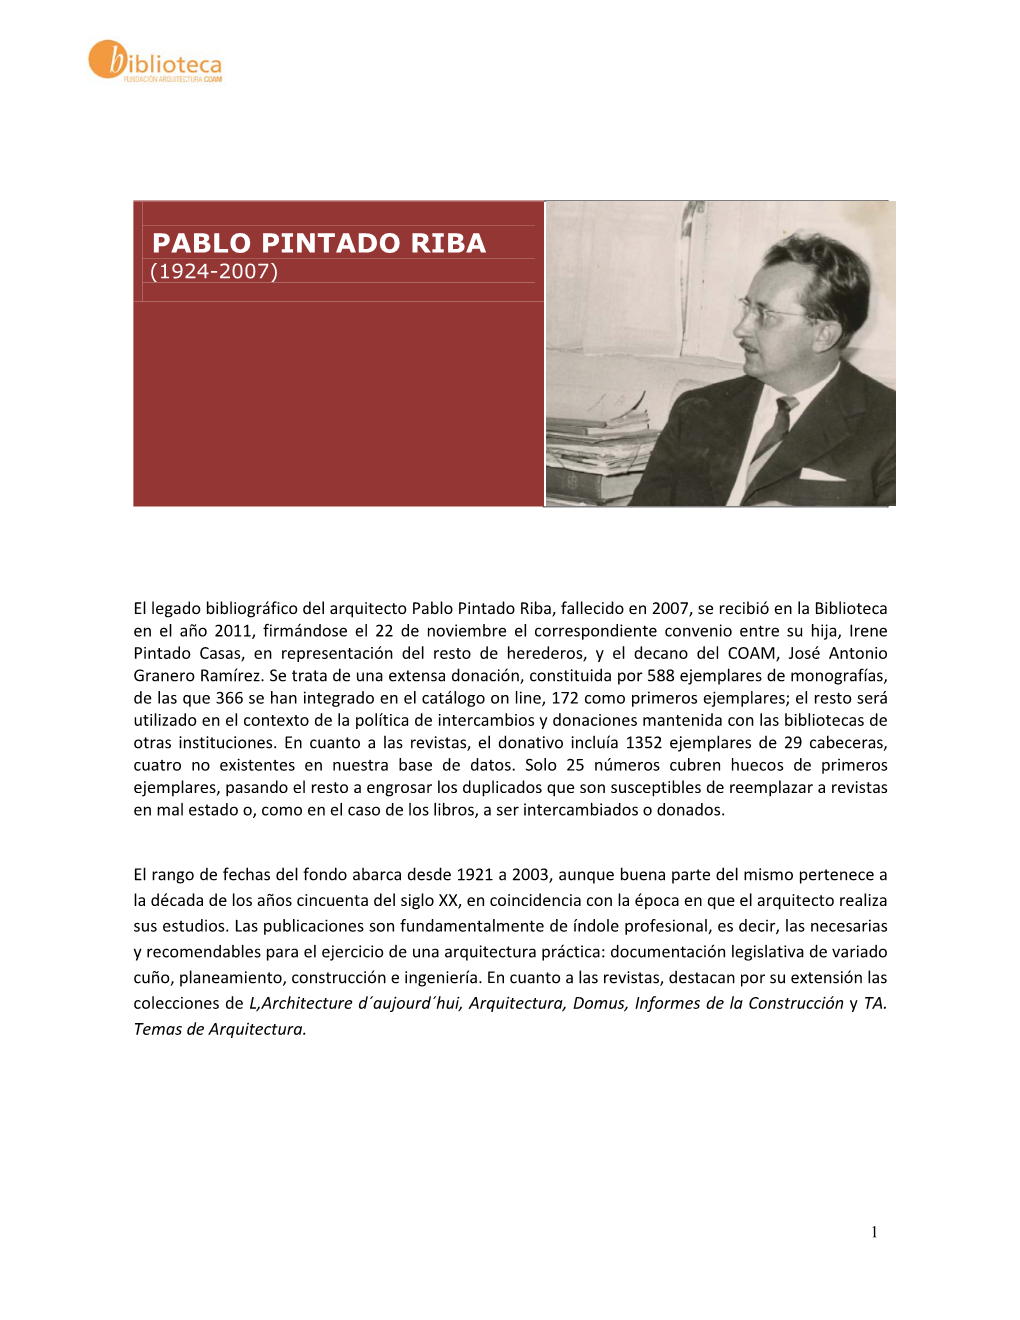 Pablo Pintado Riba (1924-2007)